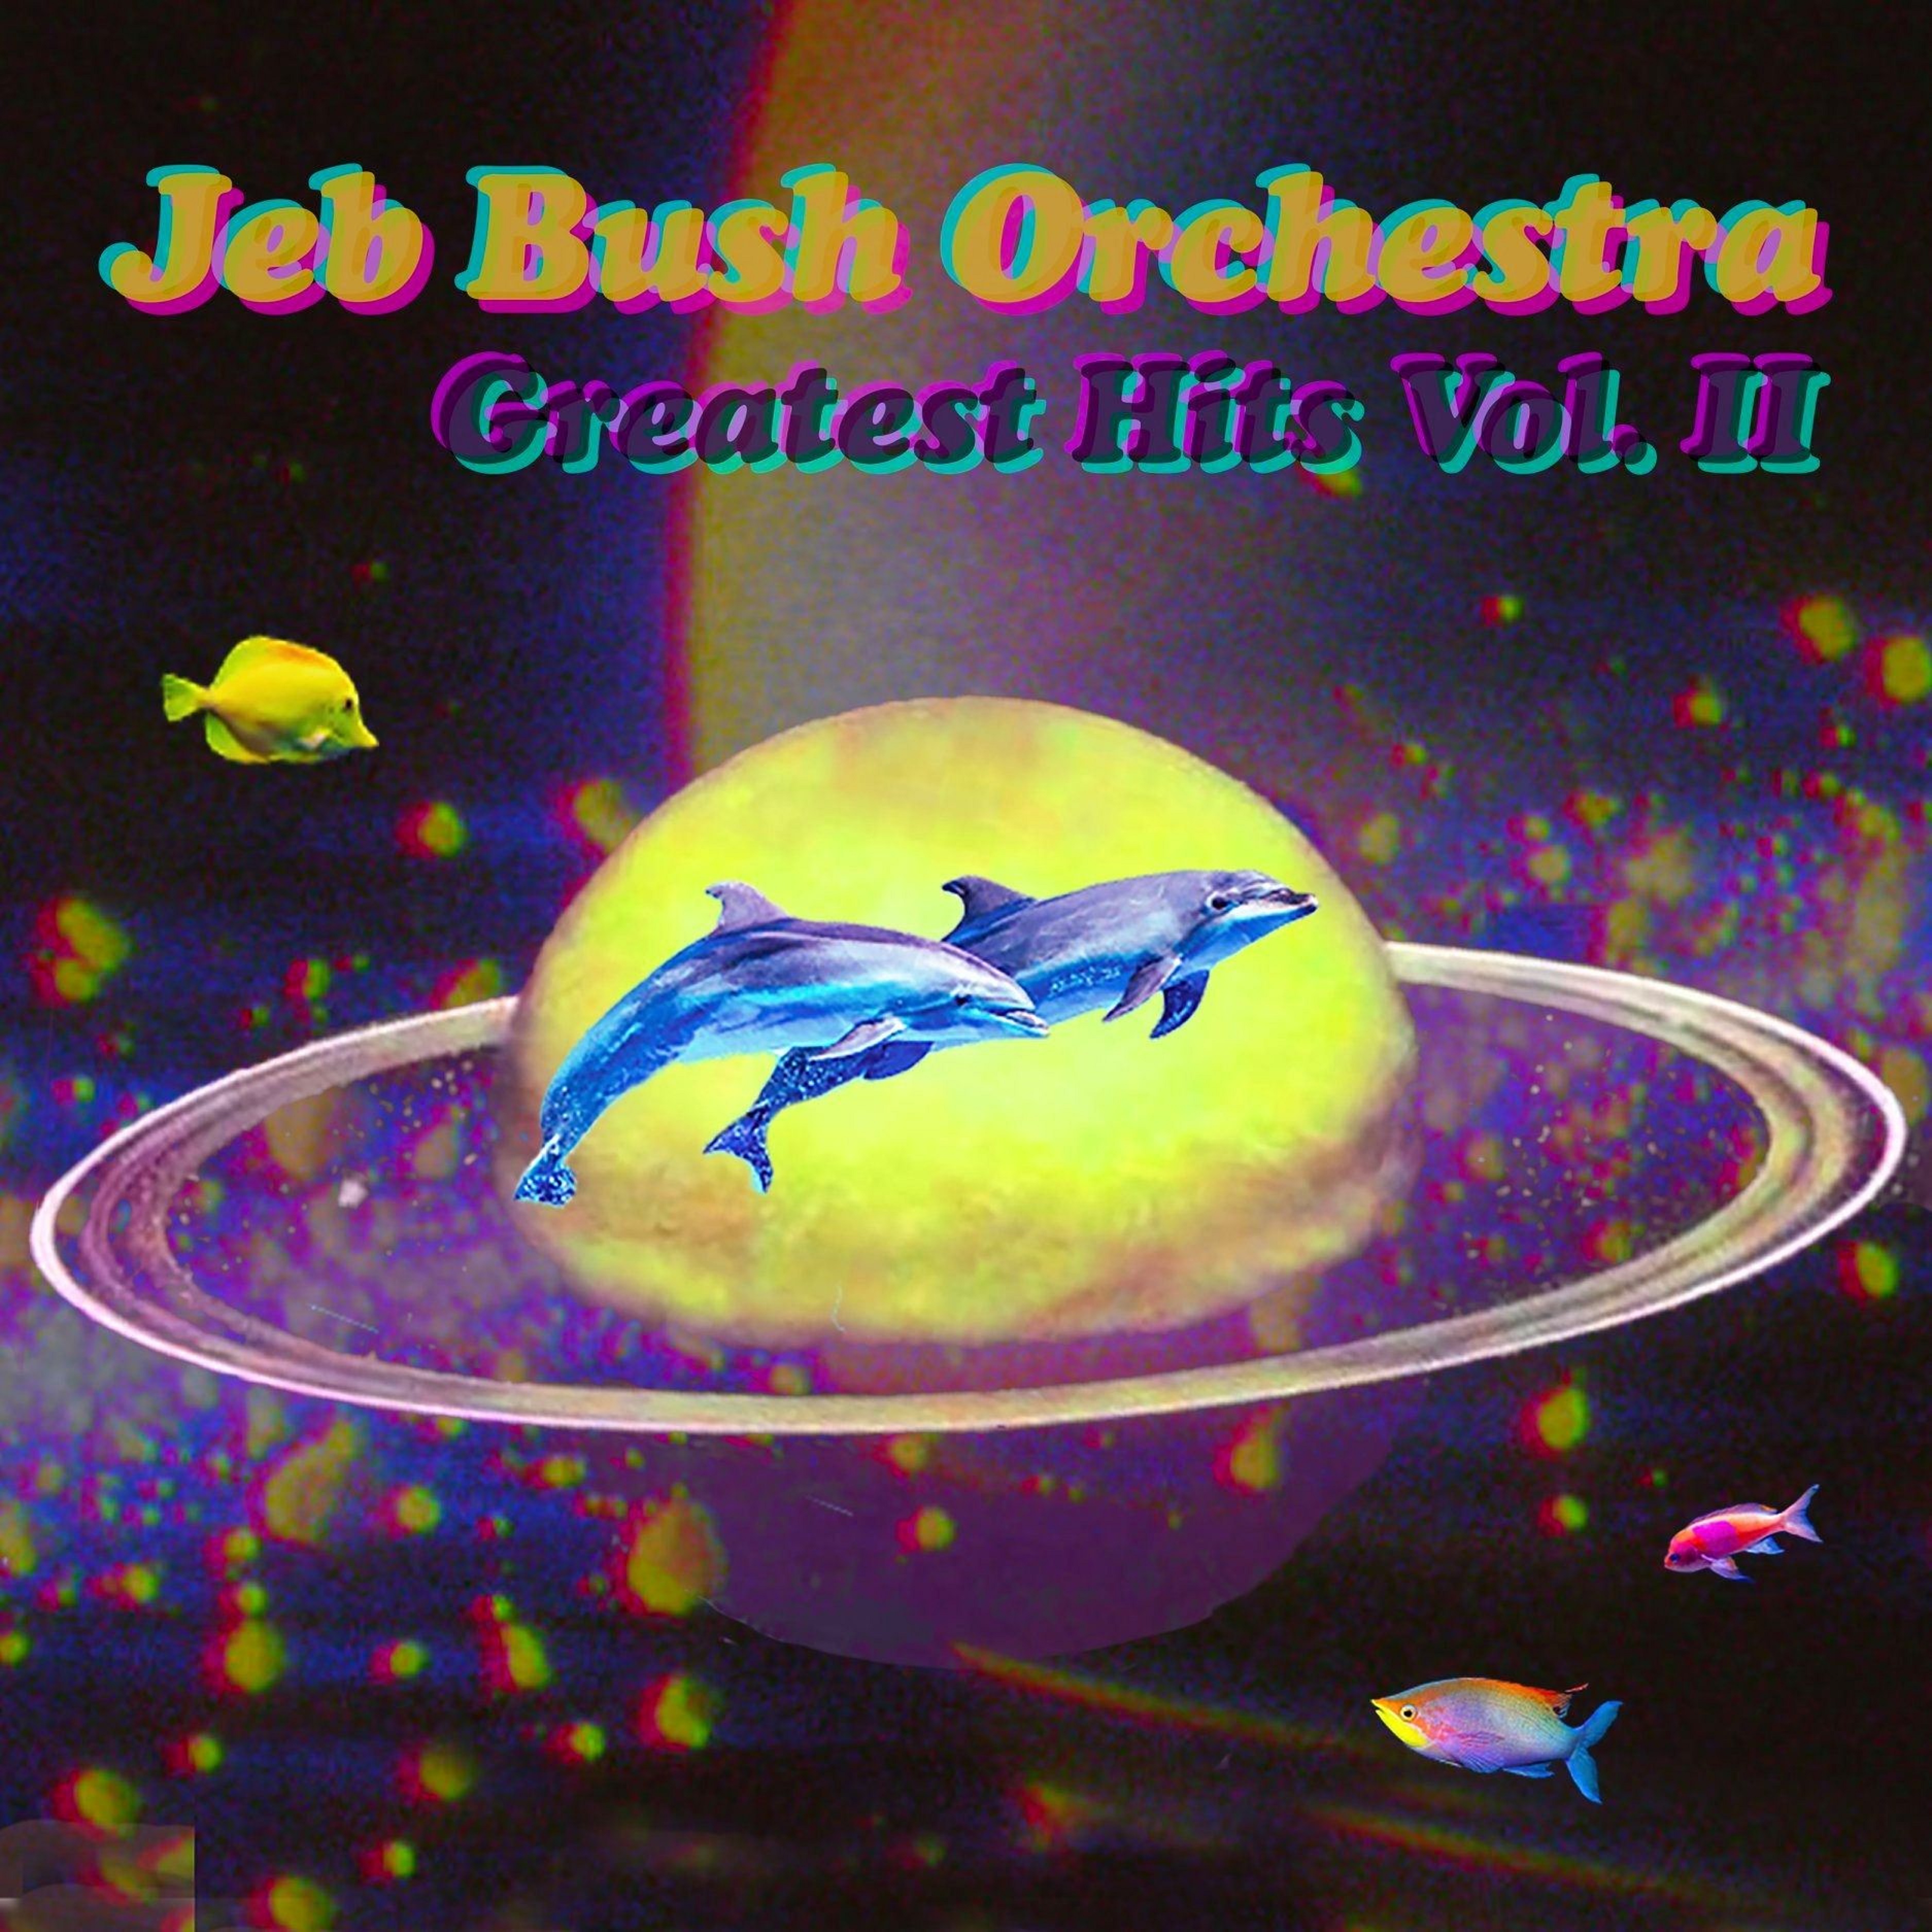 Jeb bush orchestra